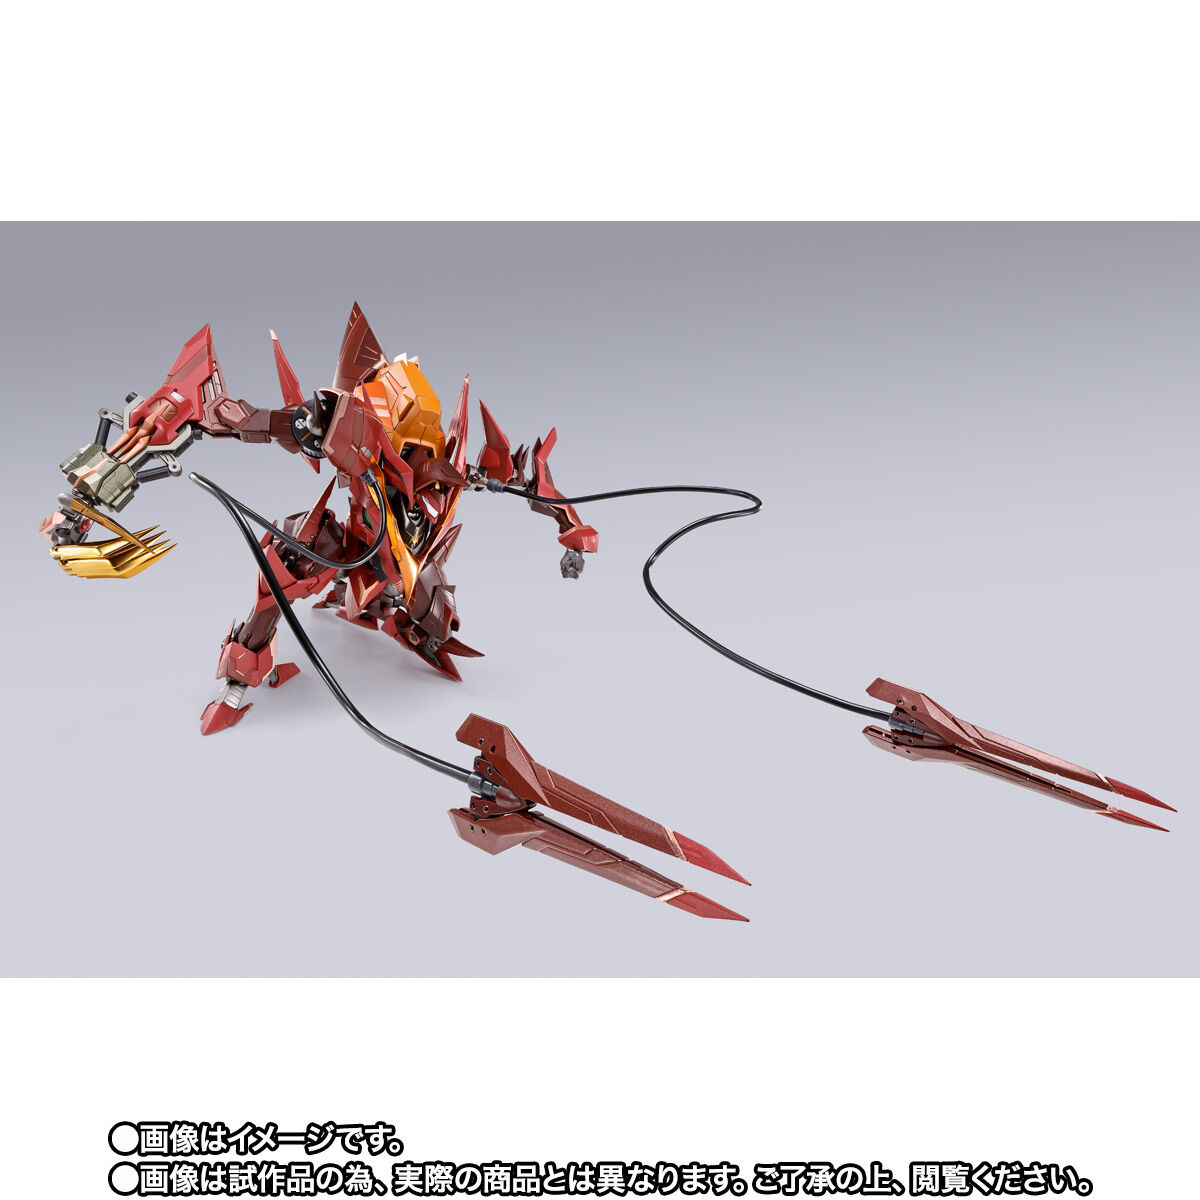 【限定販売】METAL BUILD DRAGON SCALE『紅蓮聖天八極式』コードギアス 反逆のルルーシュR2 可動フィギュア-009